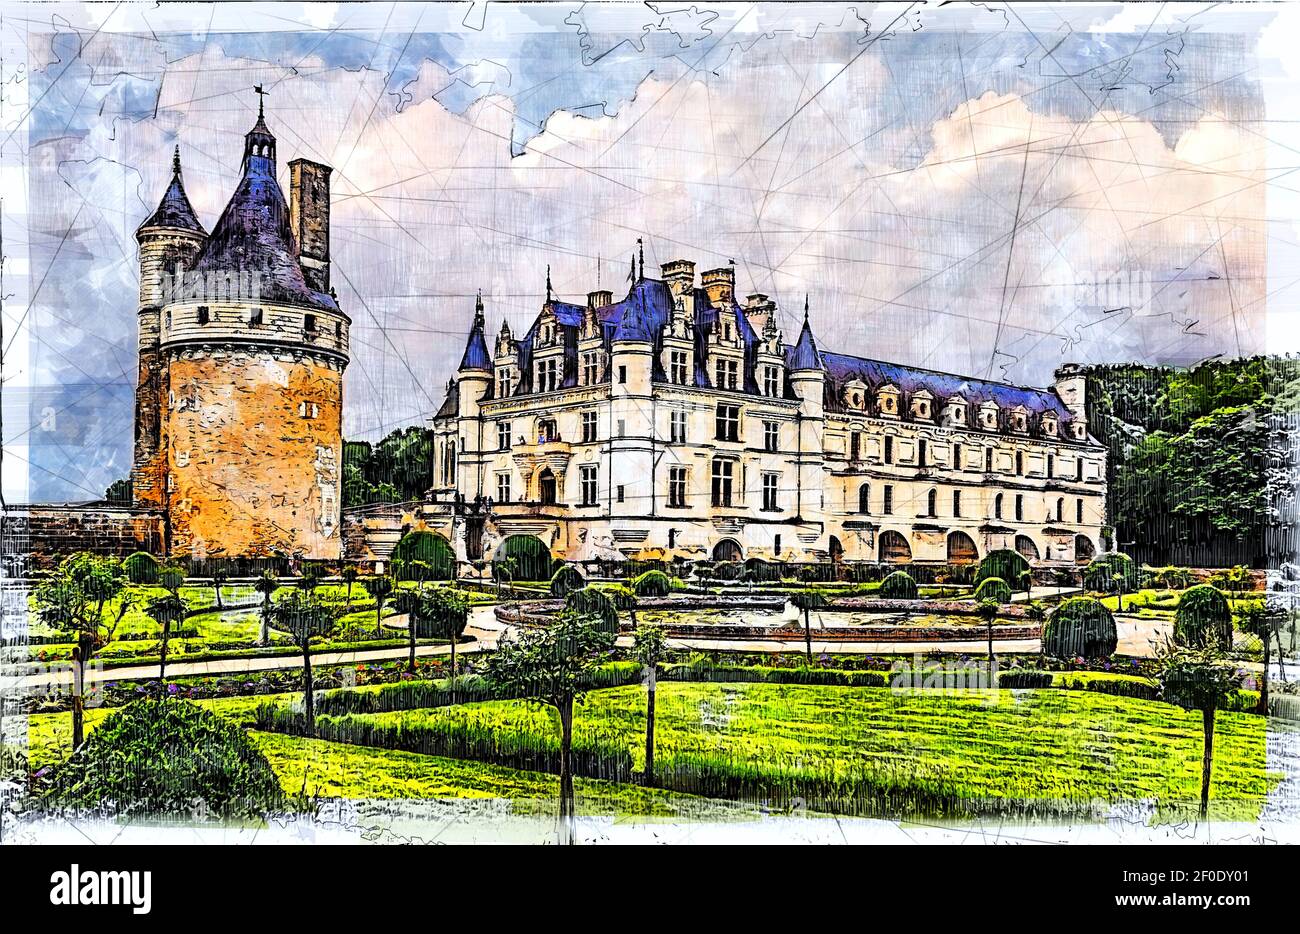 Château médiéval de Chenonceau enjambant le cher dans la vallée de la Loire en France. Illustration d'esquisse. Banque D'Images